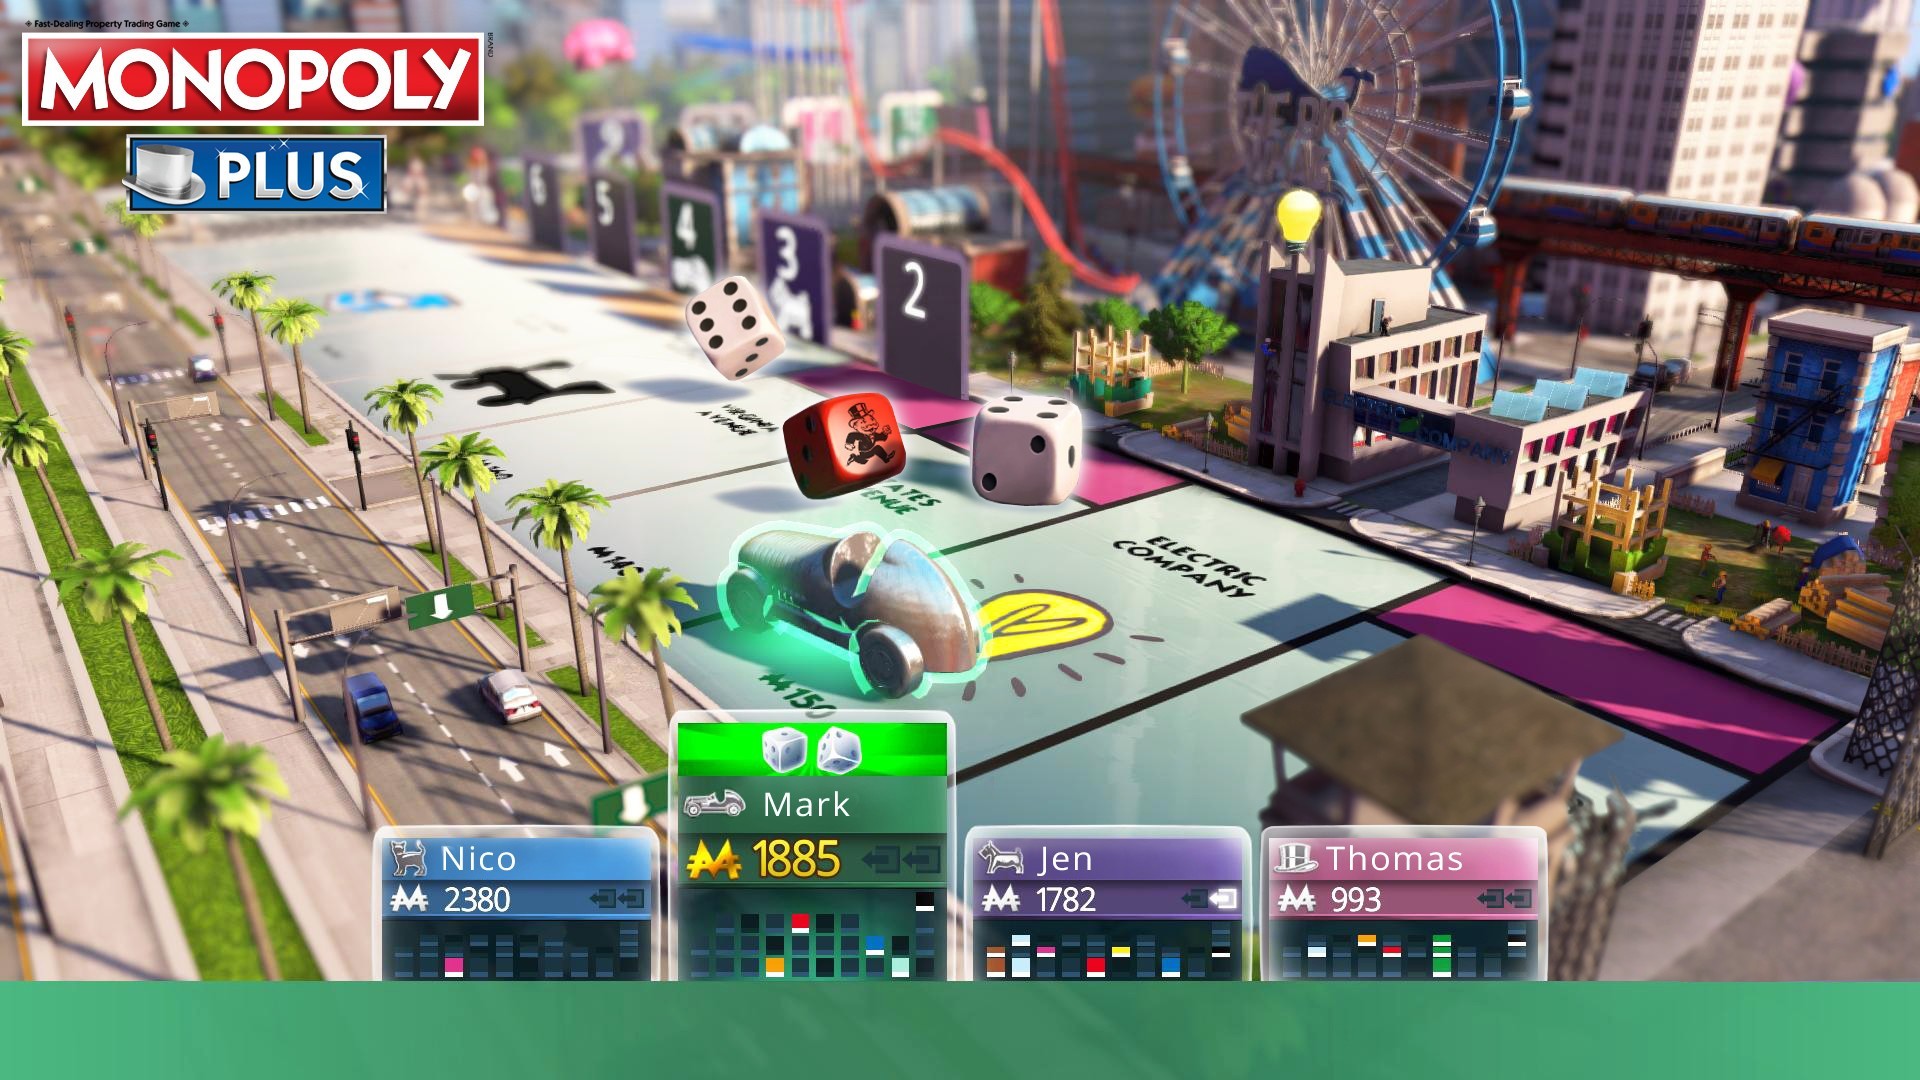 monopoly xbox 360